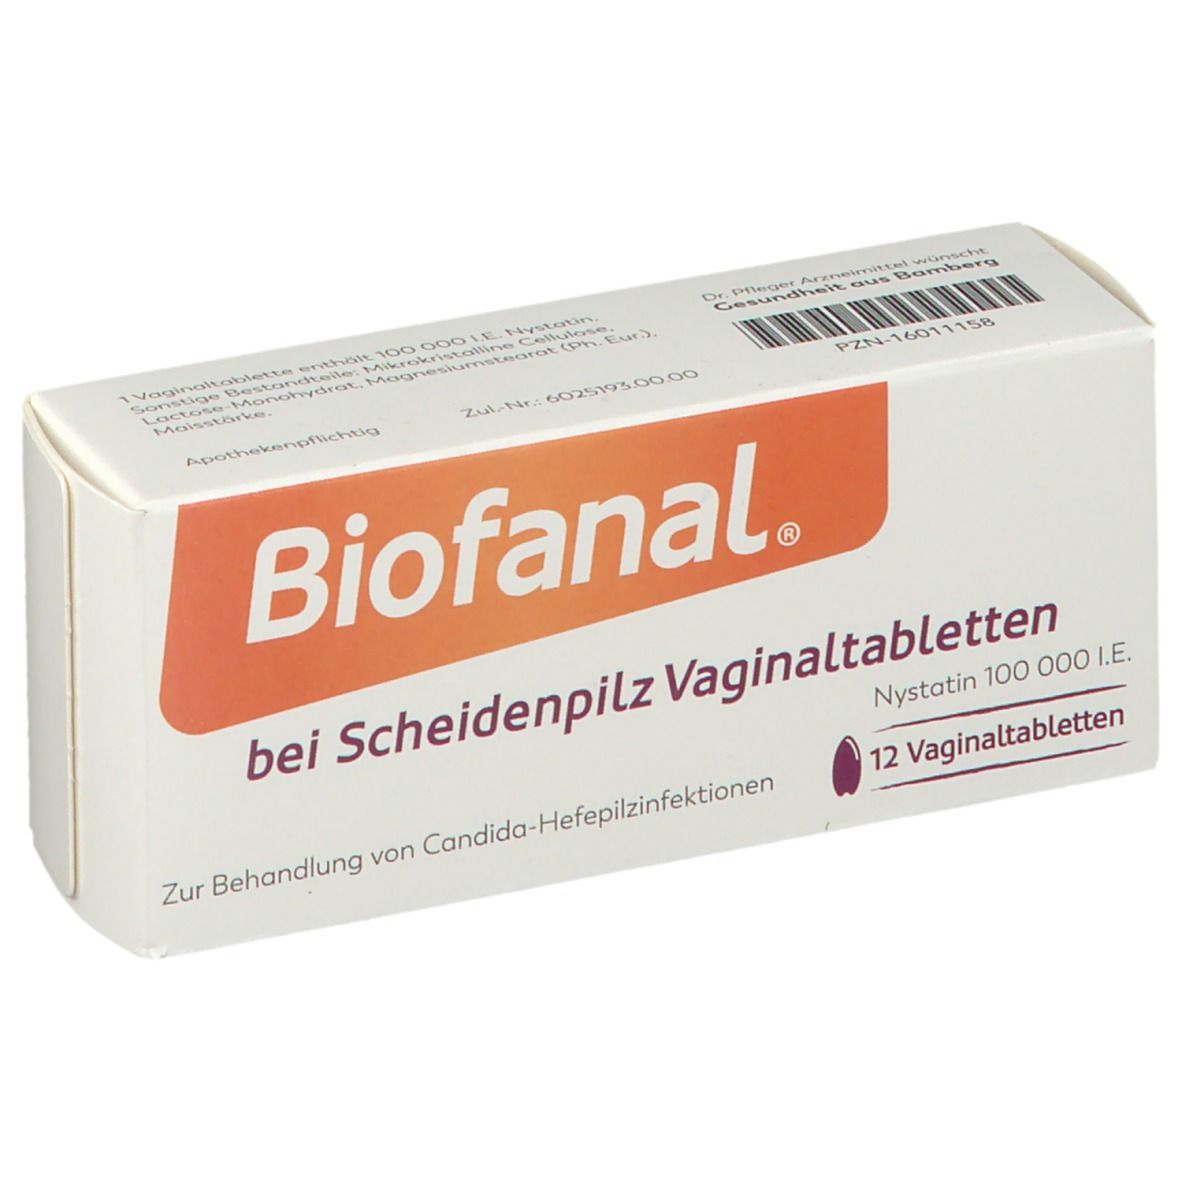 Biofanal® bei Scheidenpilz Vaginaltabletten